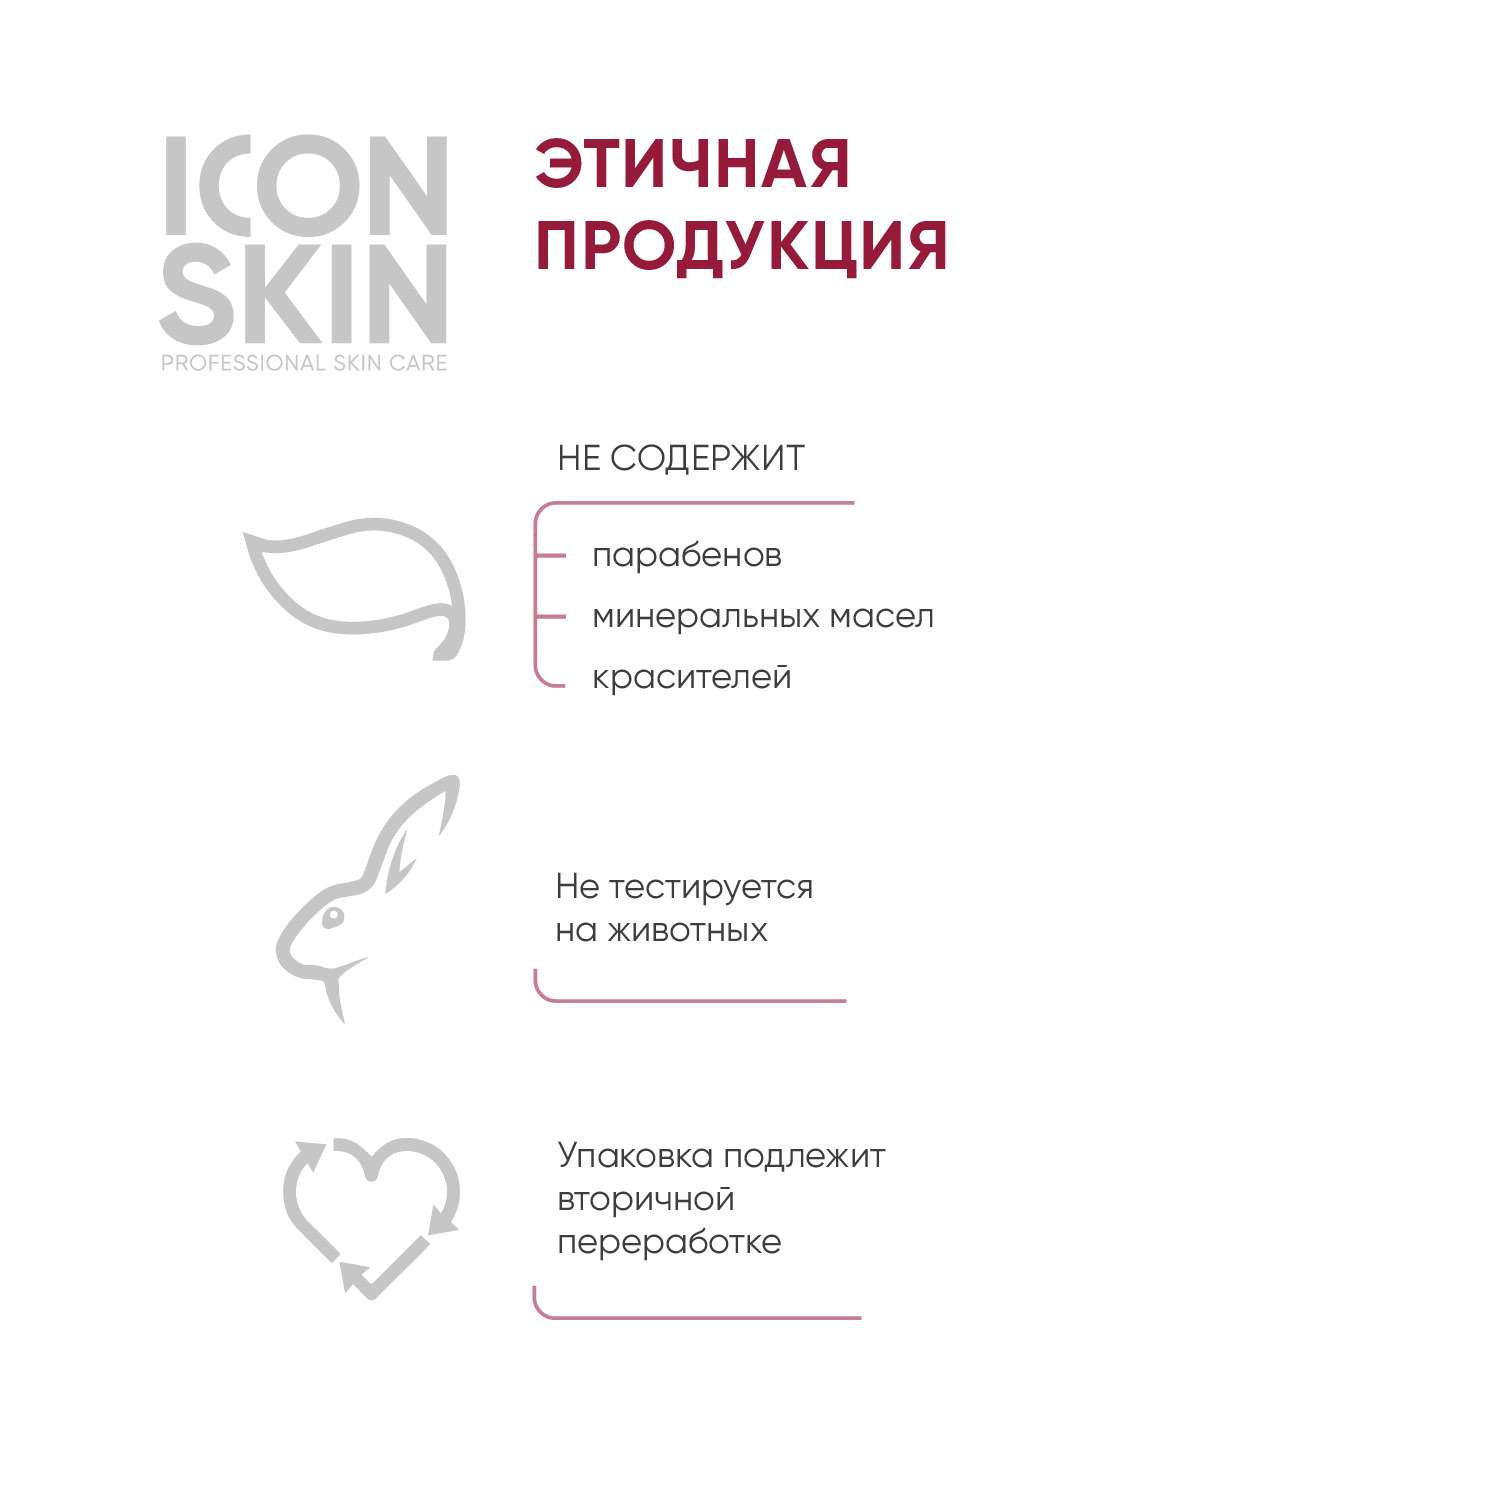 Тоник ICON SKIN лимфодренажный skin gym 150 мл - фото 7